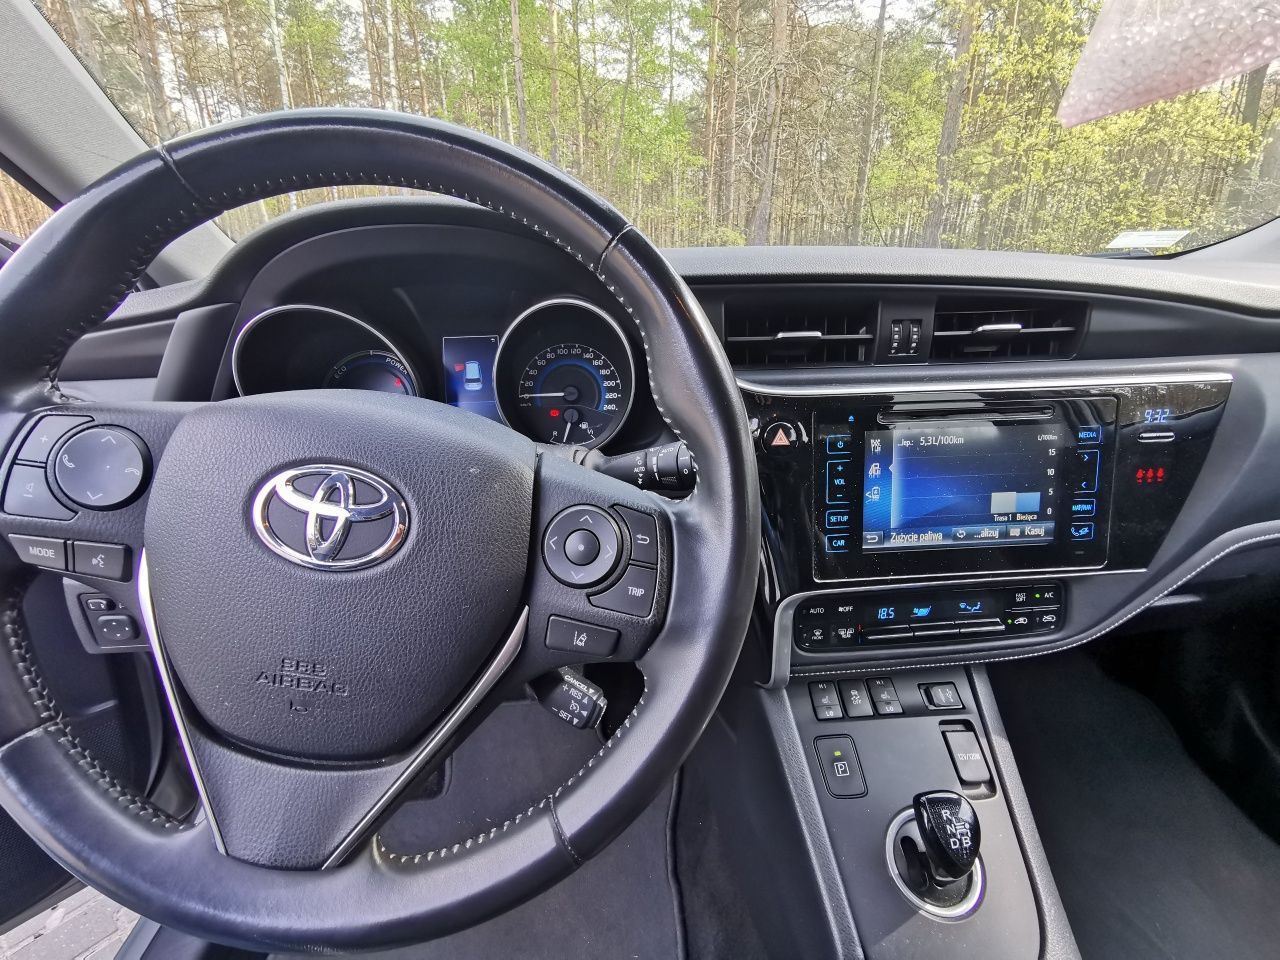 Toyota Auris 1.8 hybryda kombi 2016r zarejestrowany w Polsce .